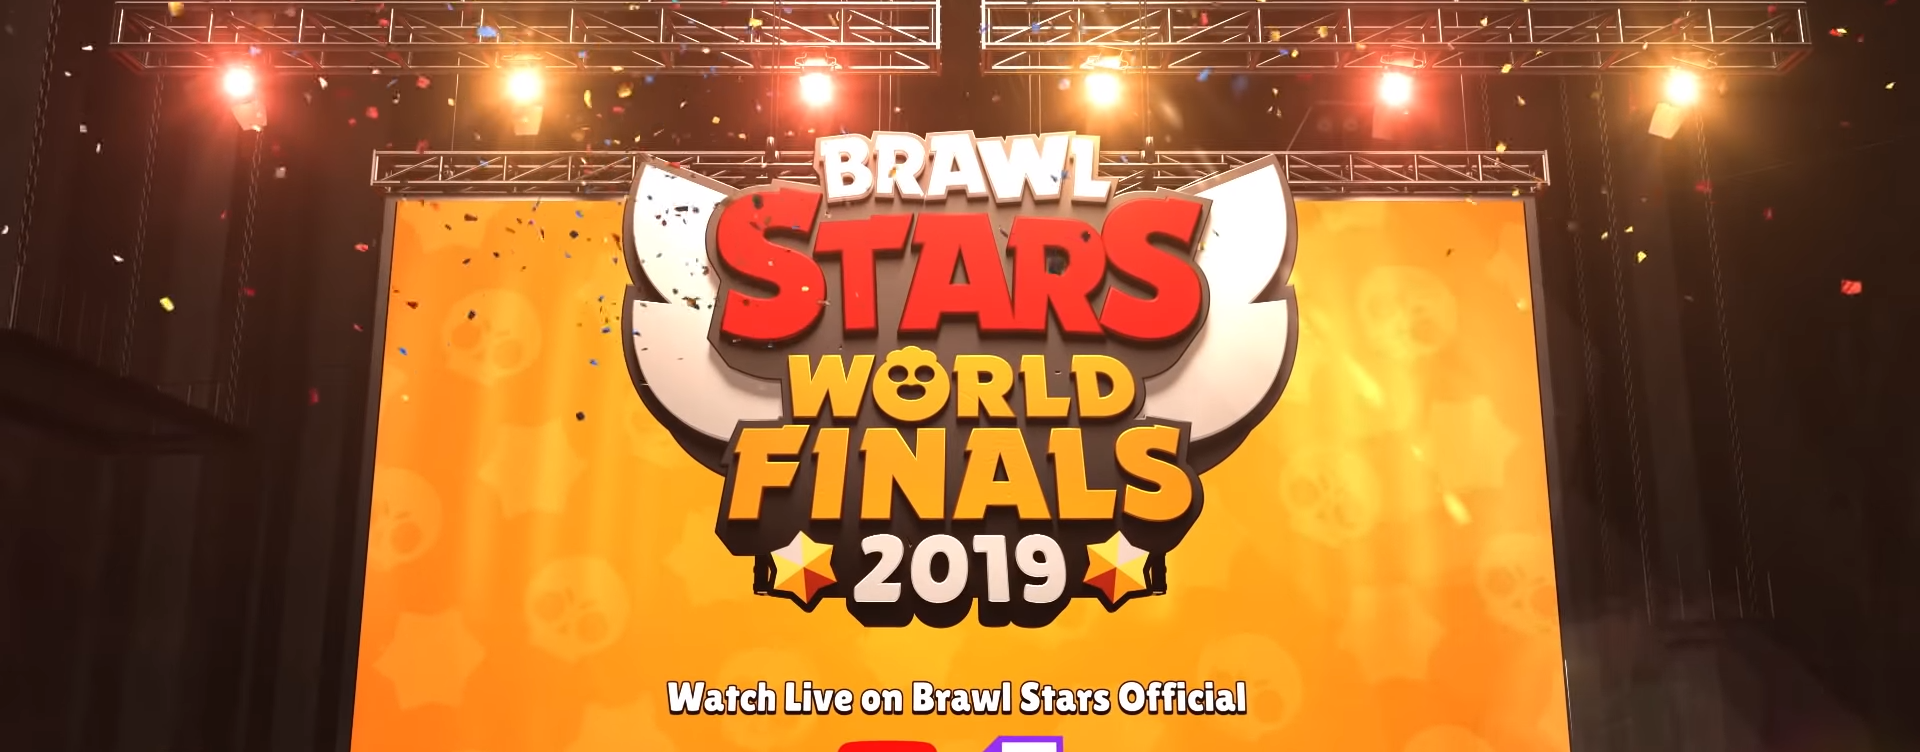 Mundial Brawl Stars Horario Fechas Formato Y Como Verlo Movistar Esports - imagen para directo brawl stars